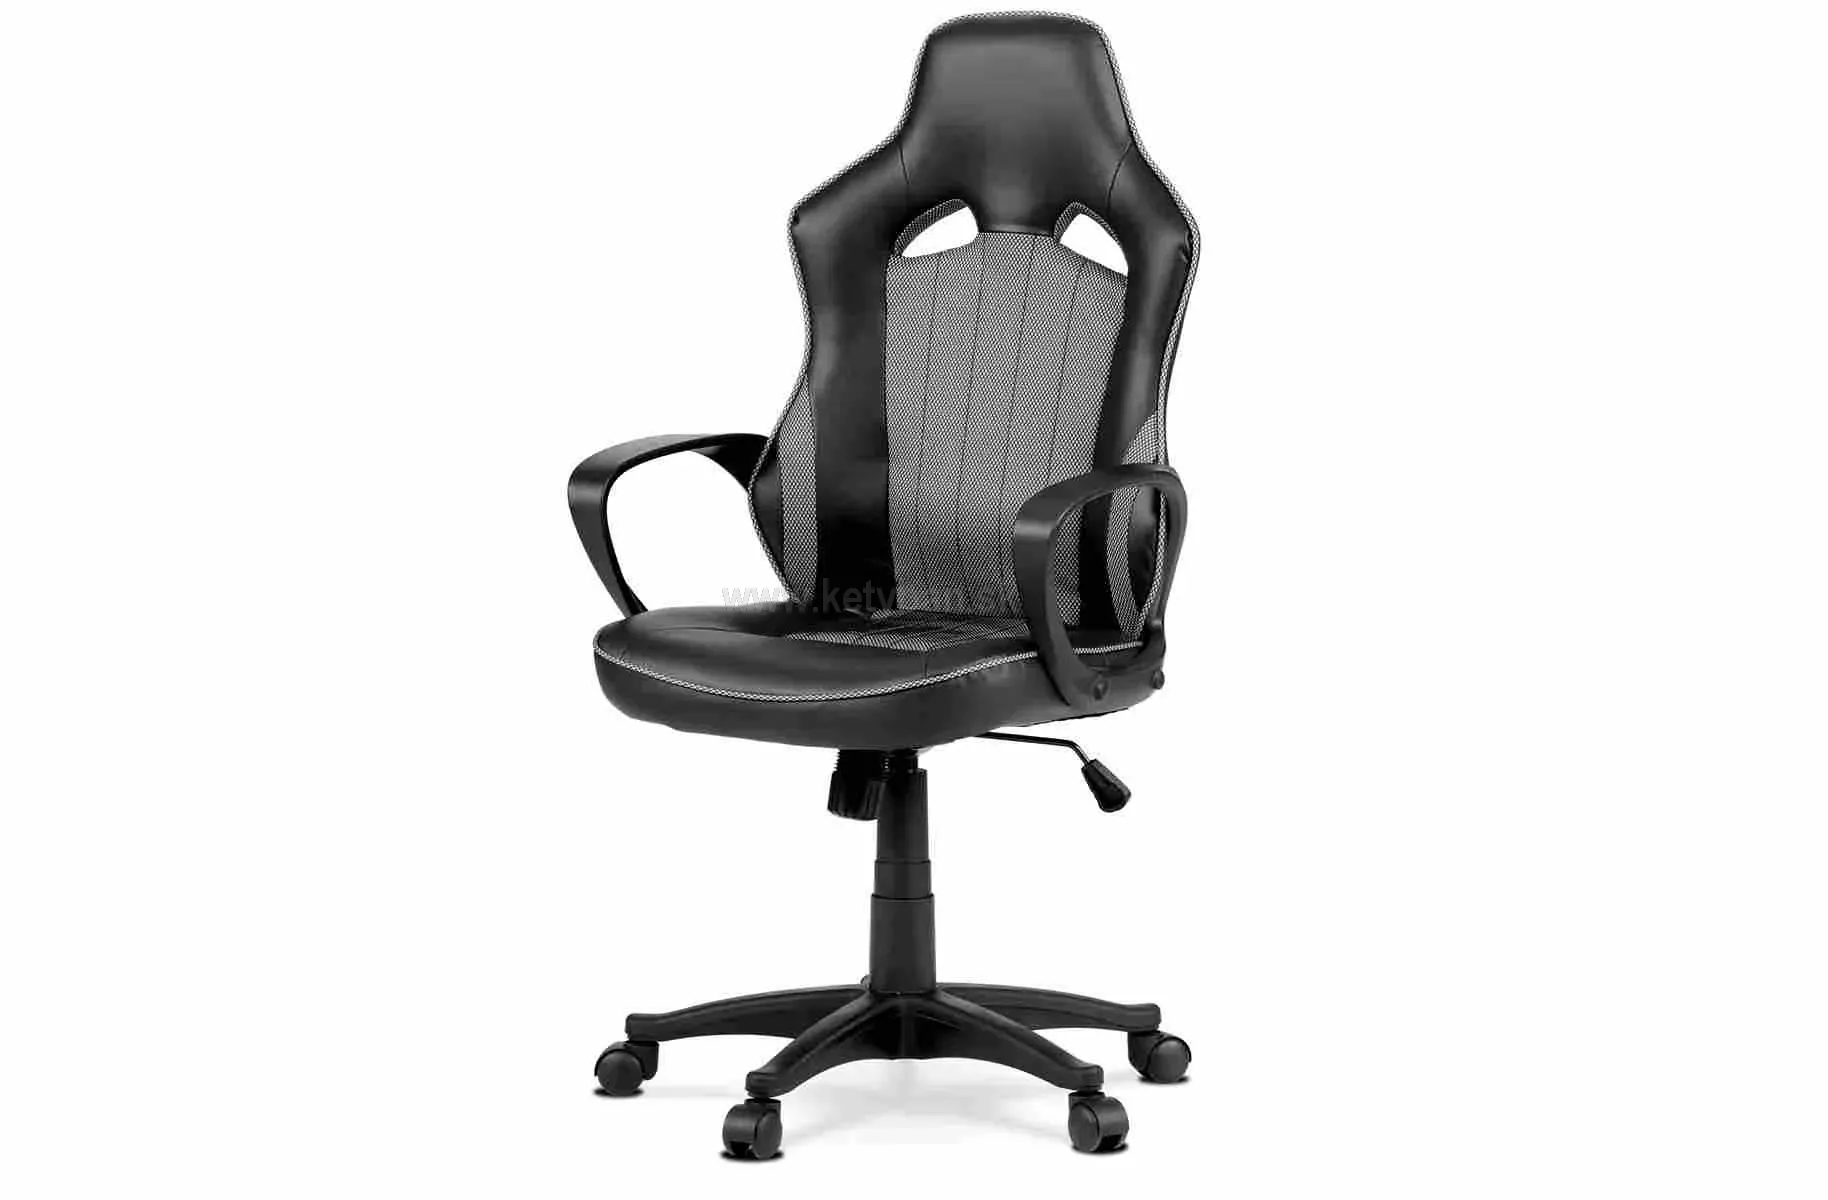 Herná stolička K-y205 grey